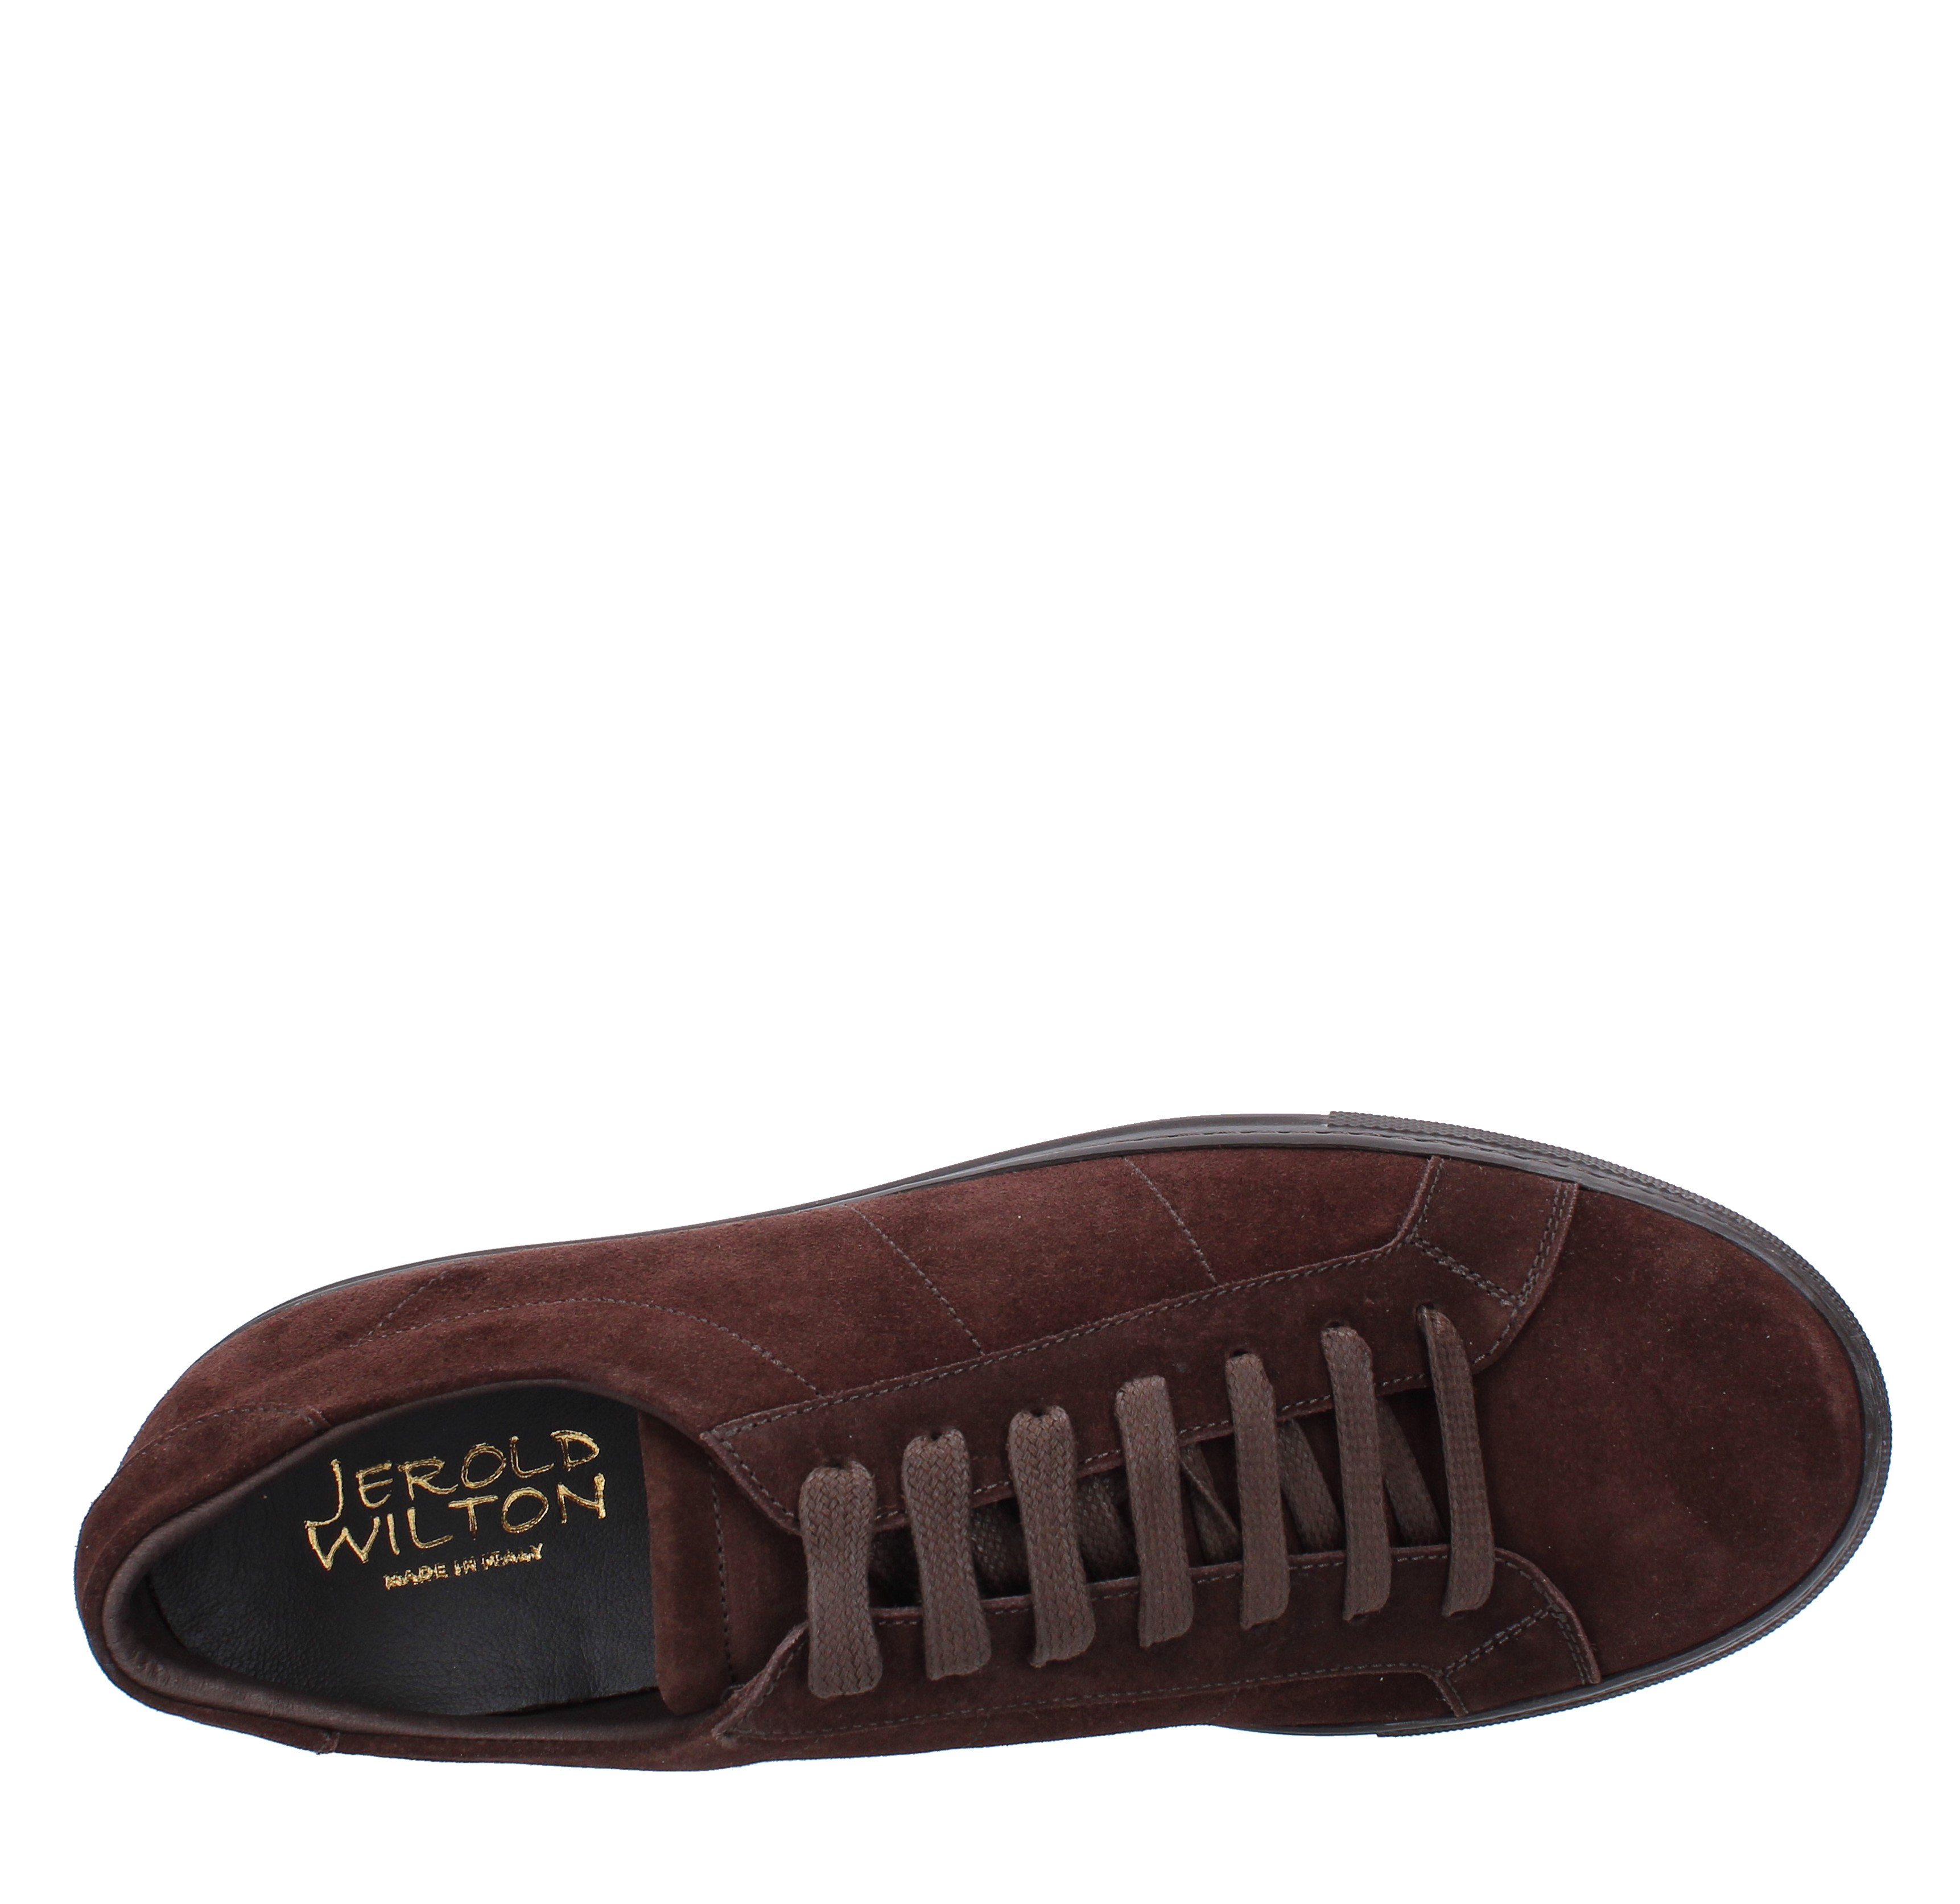 Suede sneakers JEROLD WILTON | 173MARRONE T.MORO